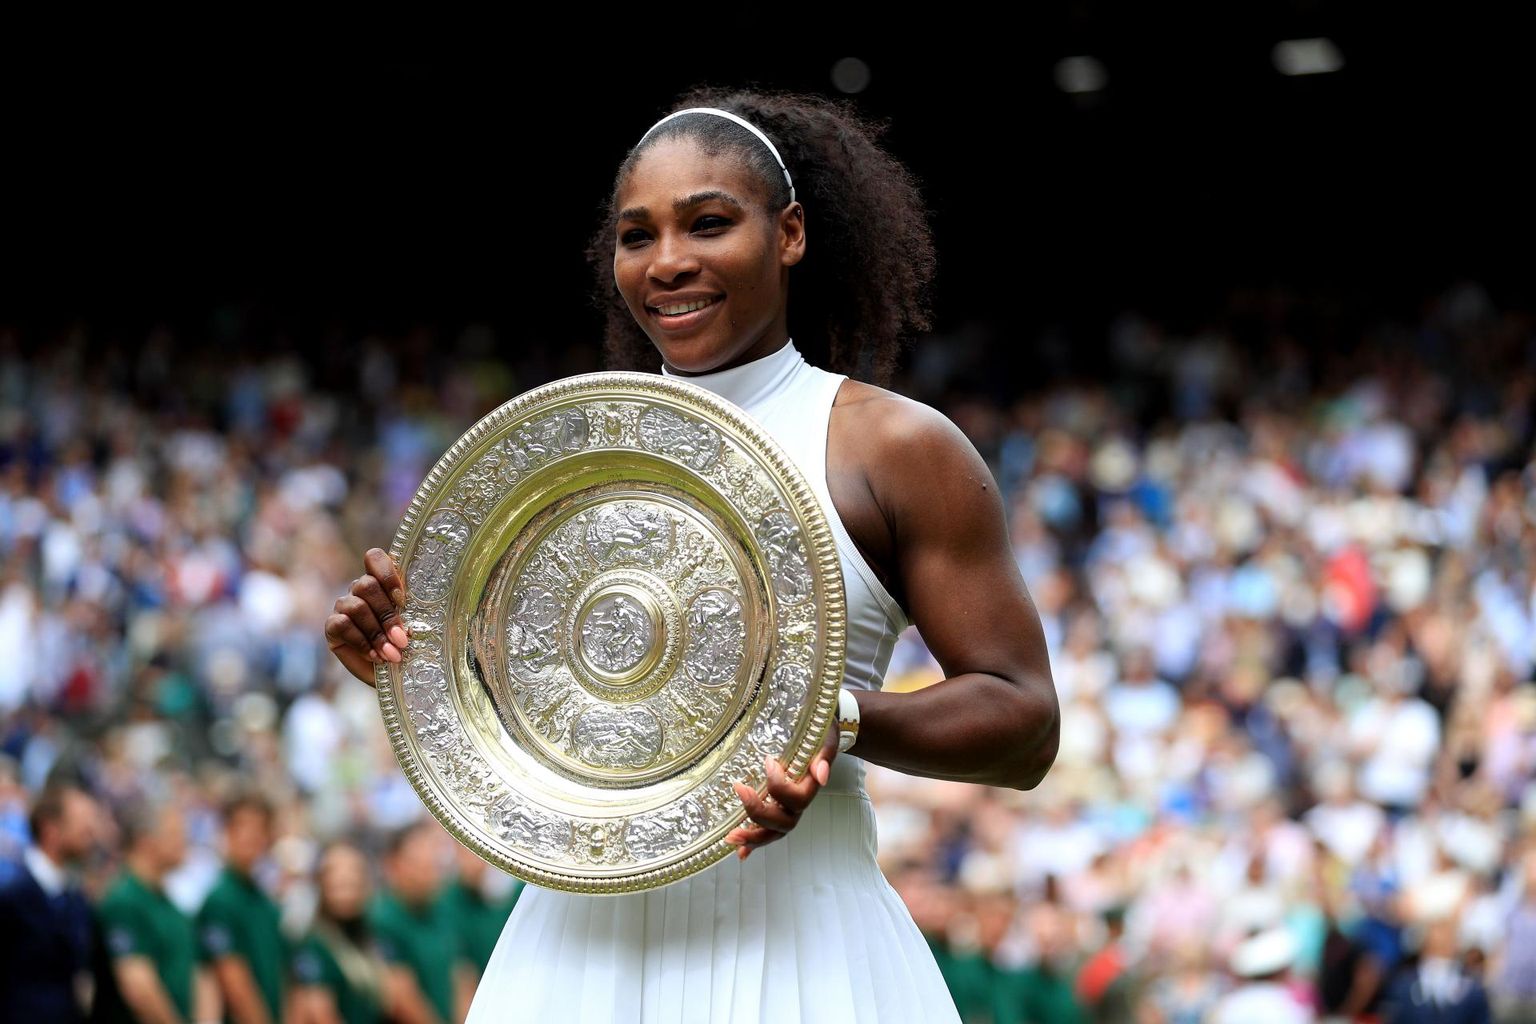 Wimbledonis seni seitse korda võidutsenud Serena Williams jahib Margaret Courti rekordit ehk 24. slämmiturniiri võitu.